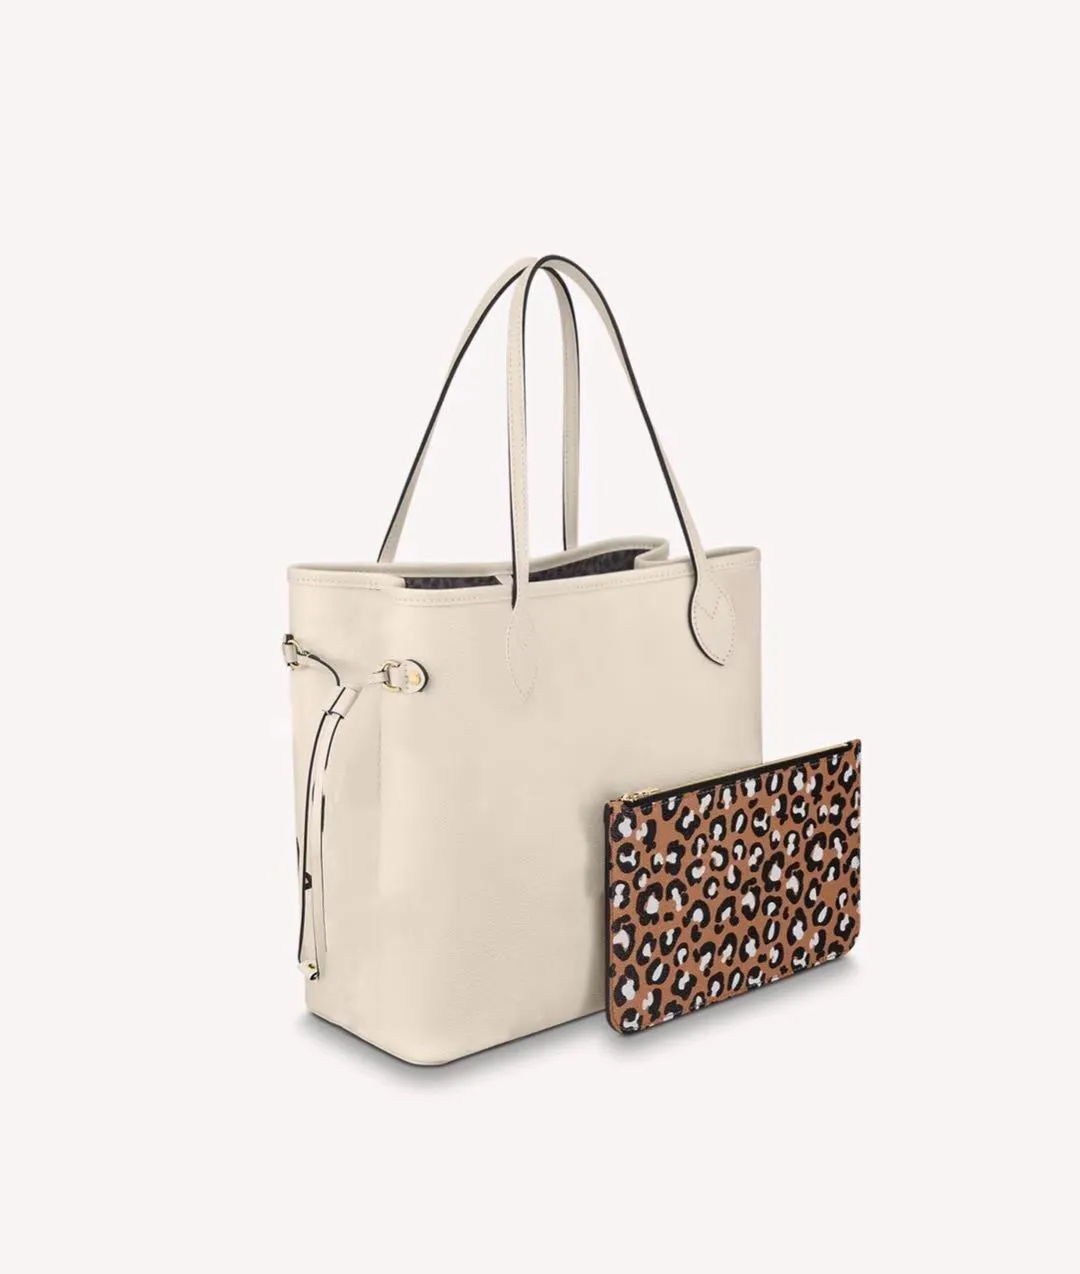 2021 Latest Autumn Wild At Heart Totes Set Empreinte Leather Leopard print Purse m45818 m45819 Ladies Fashion Shoulder Bag Handbags